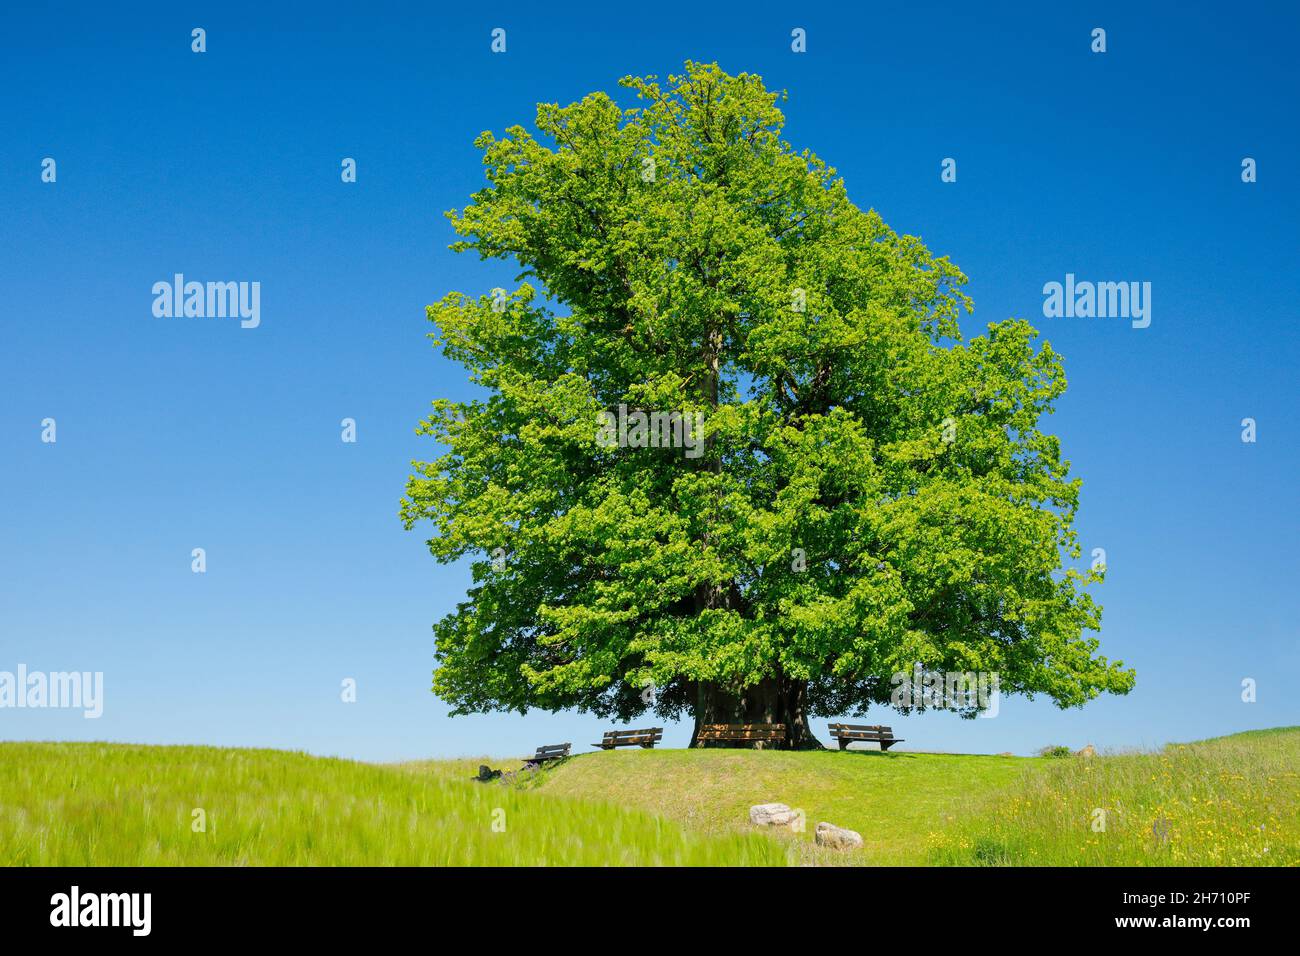 Die Linner Linden. Der alte Lindenbaum steht einsam auf einem Hügel unter blauem Himmel. Bänke laden zum Entspannen ein, Linn im Kanton Aargau, Schweiz Stockfoto